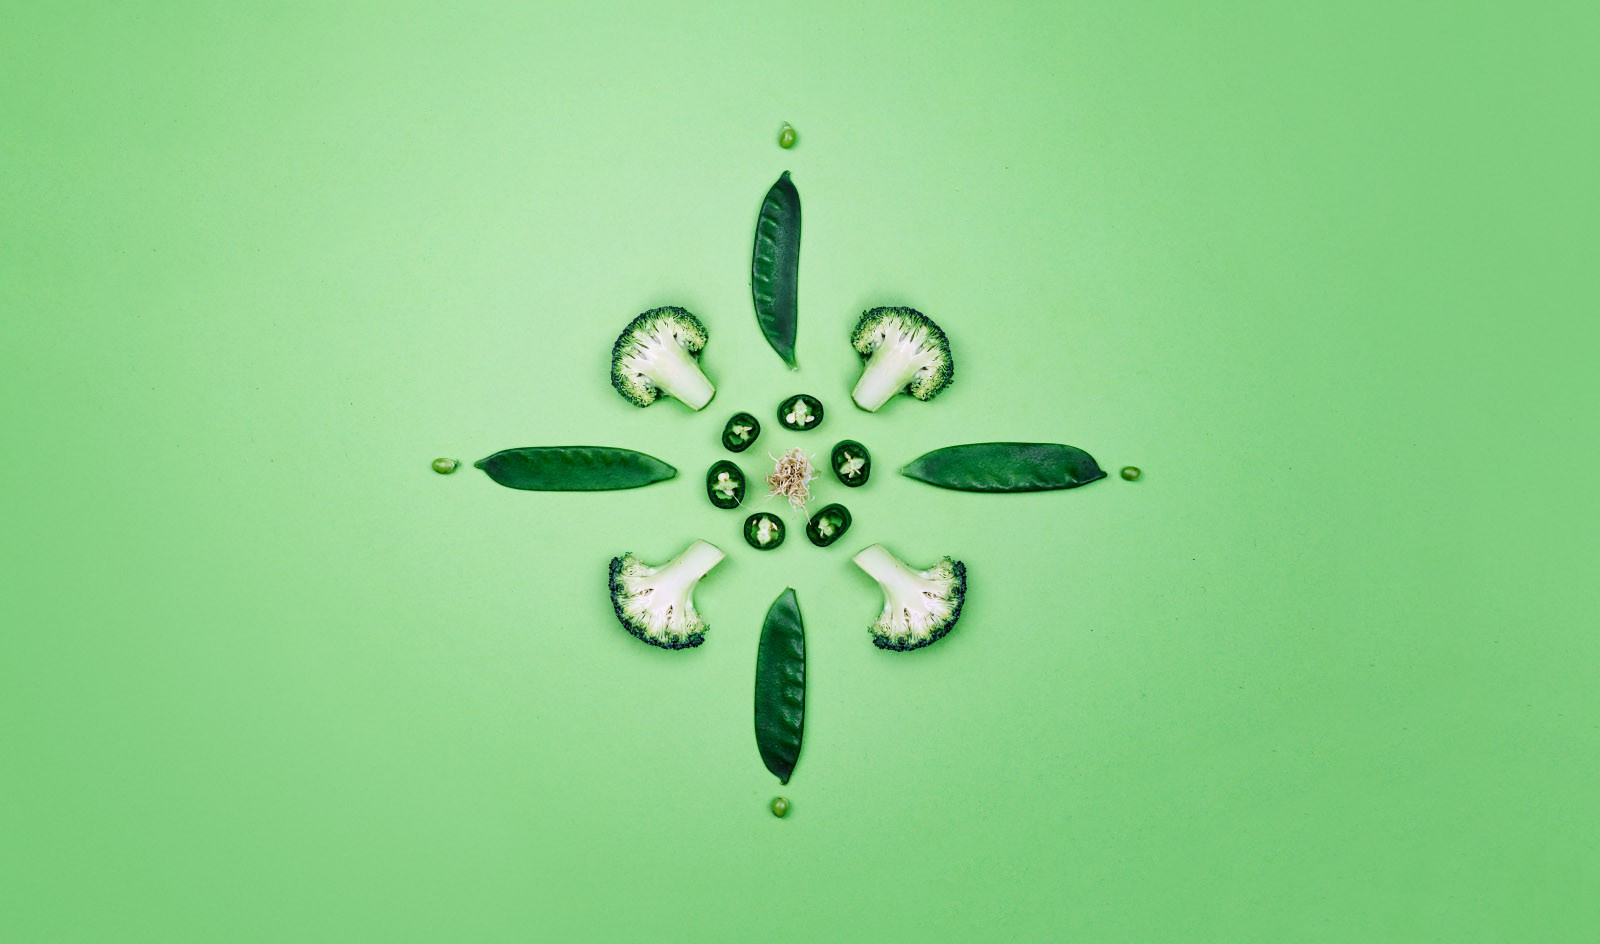 Brokkoli, Bohnen und Chillistücke arrangiert zu einer Blume. Fotografiert auf grünem Untergrund.